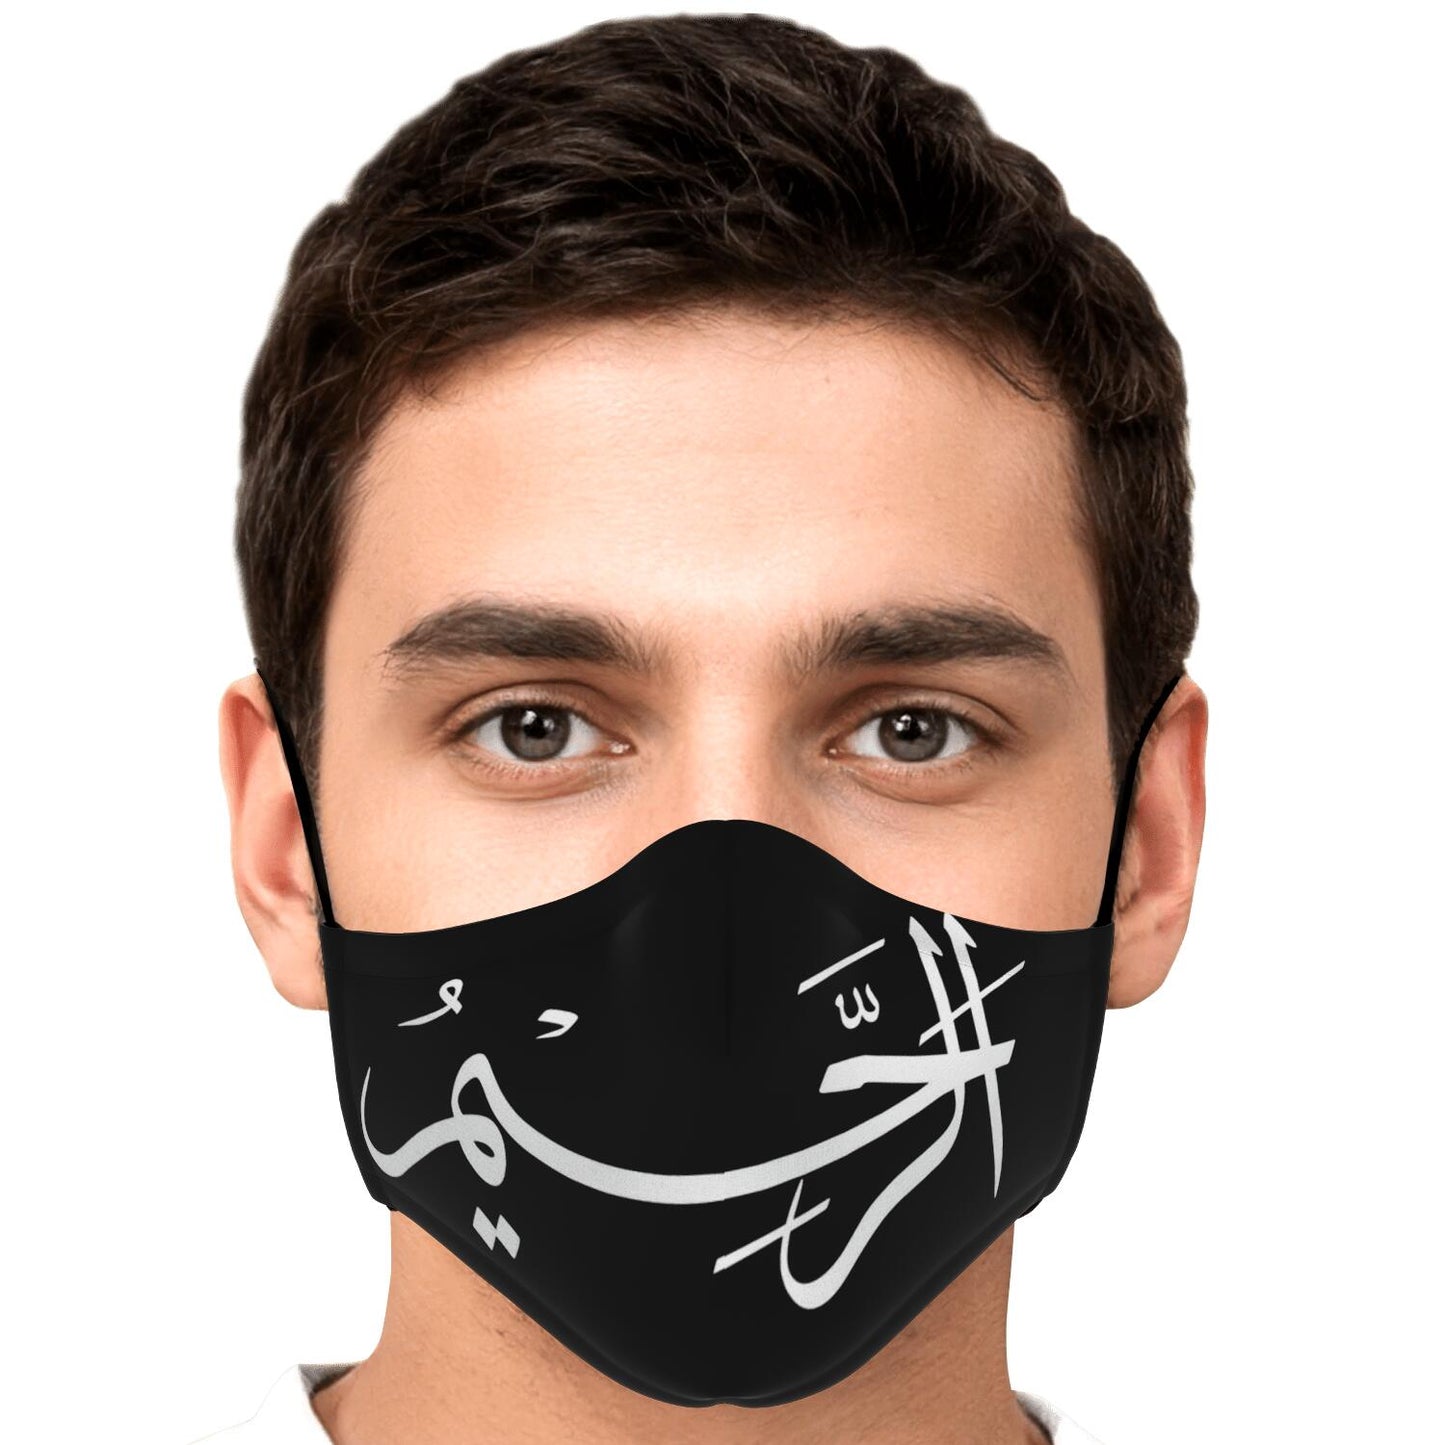 Masque facial imprimé personnalisé (Arrahim)